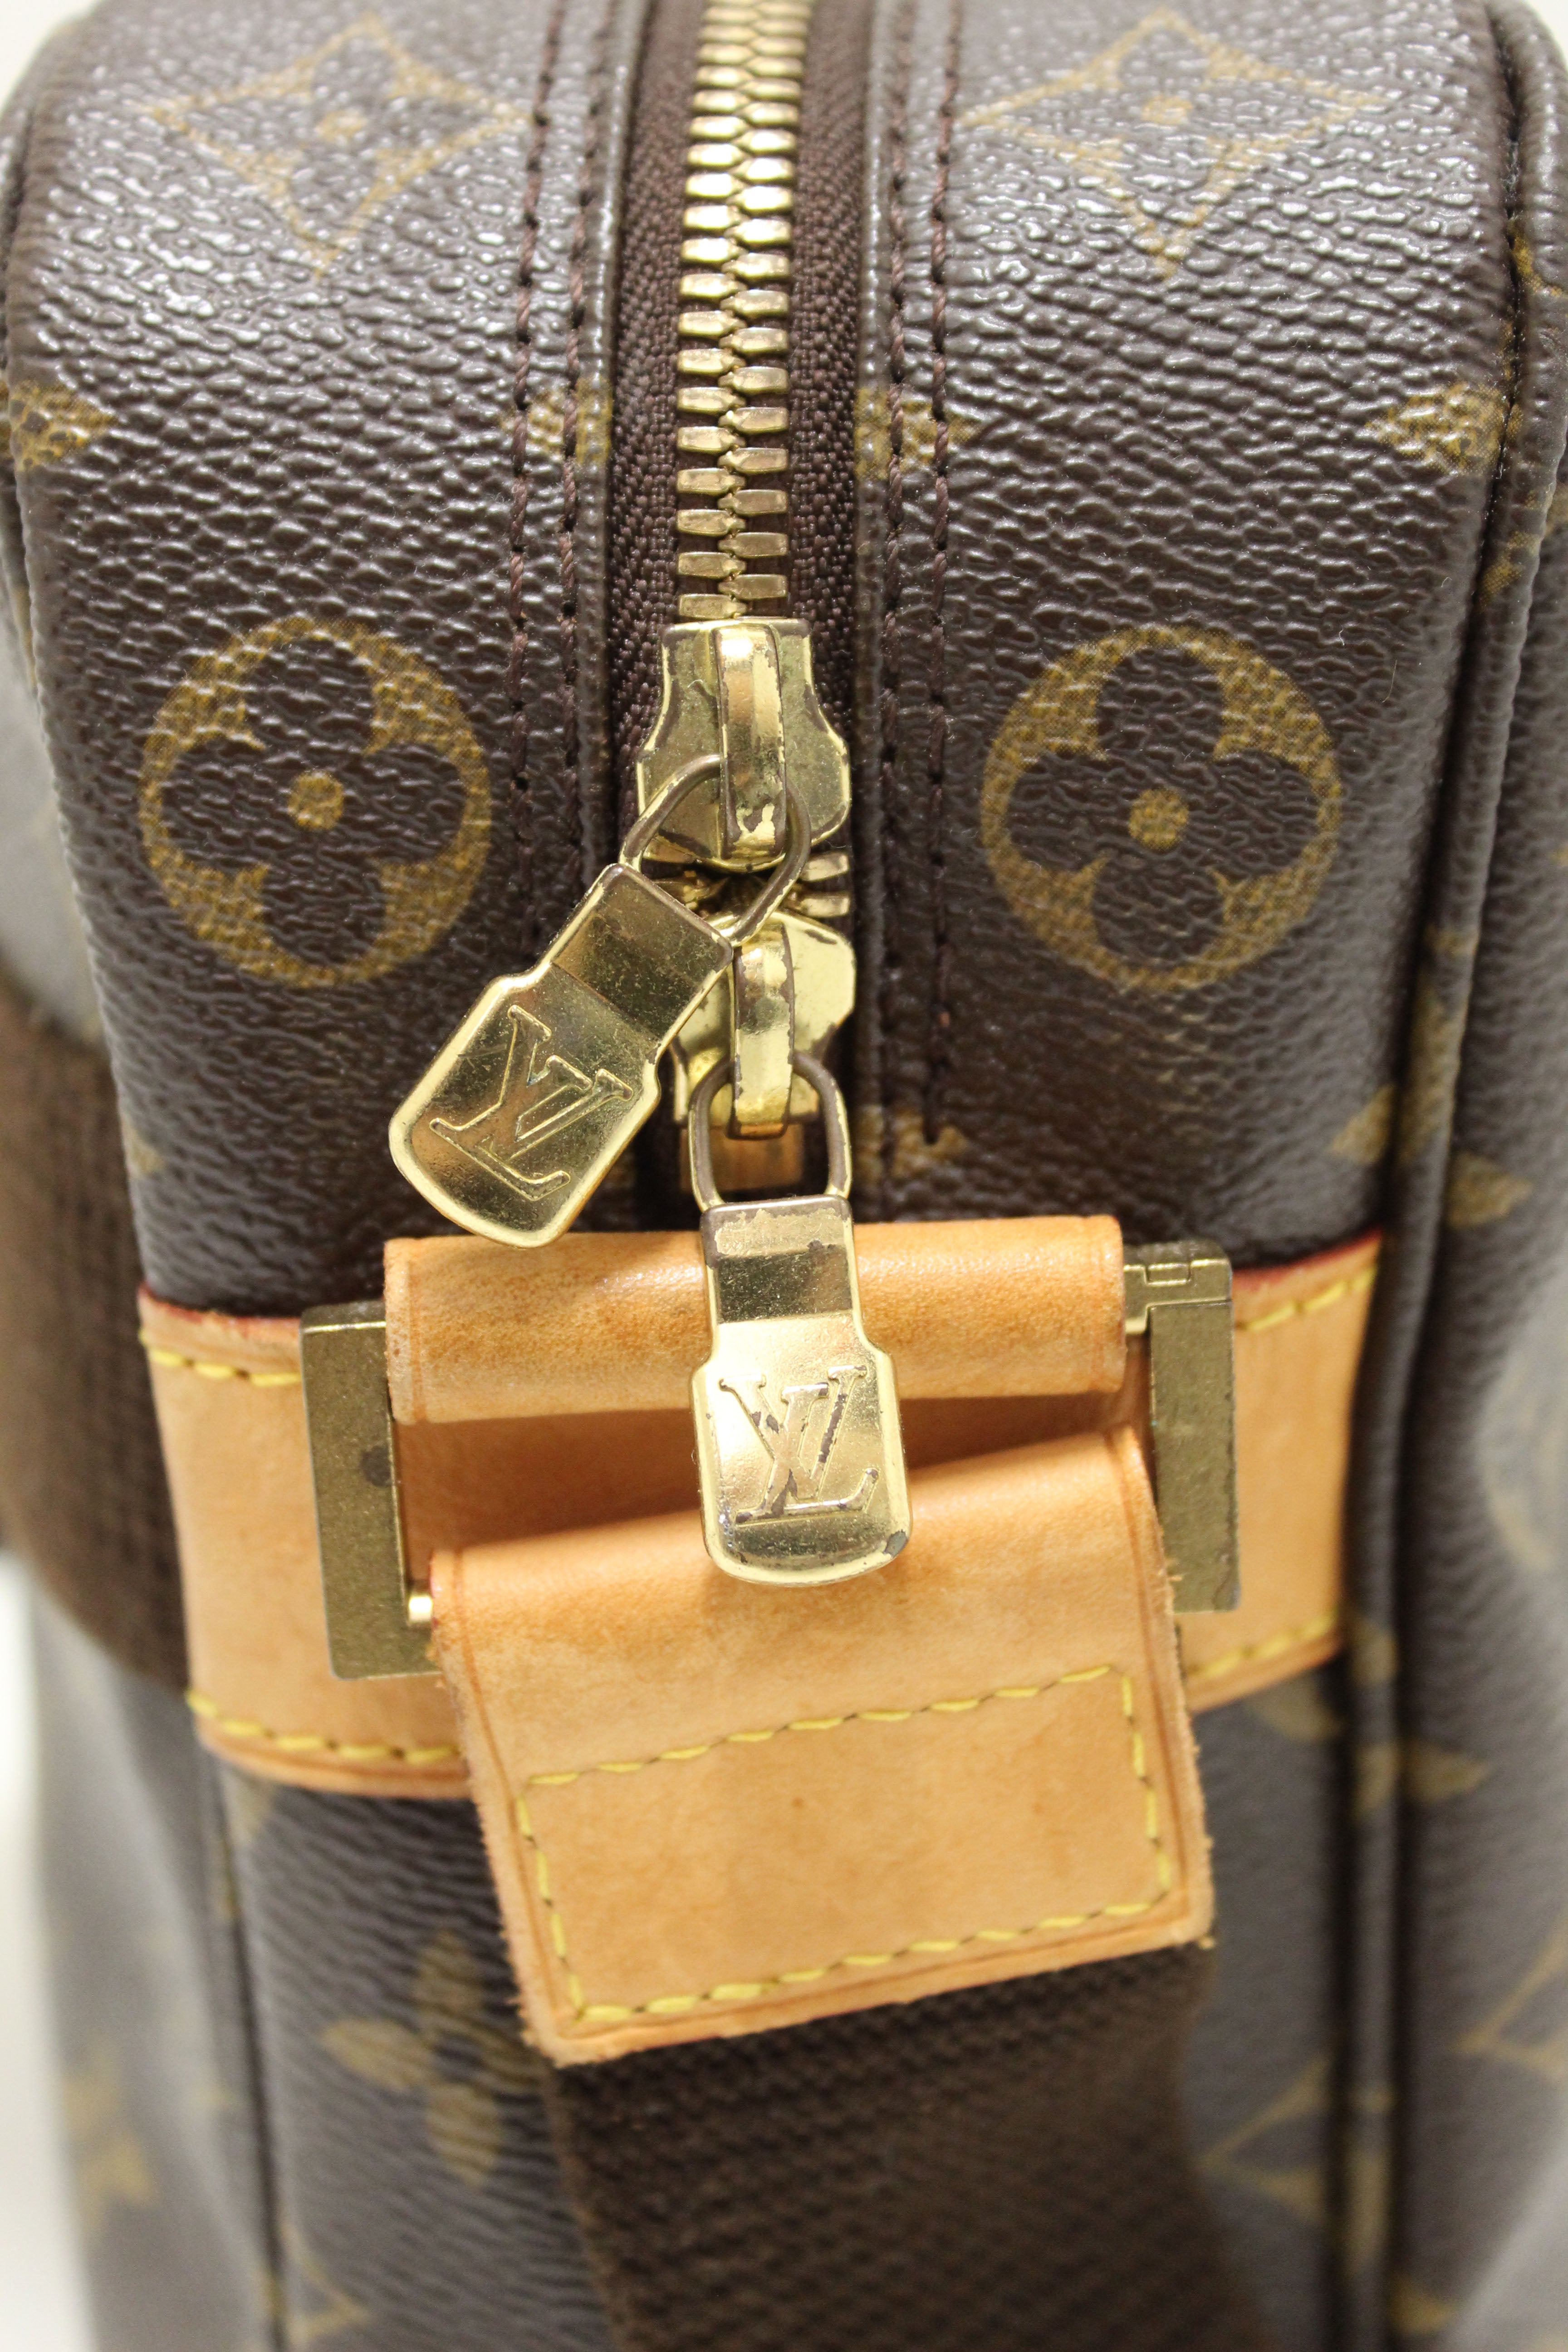 Authentic Louis Vuitton Damier Ebene South Bank Besace Bag Messenger Bag